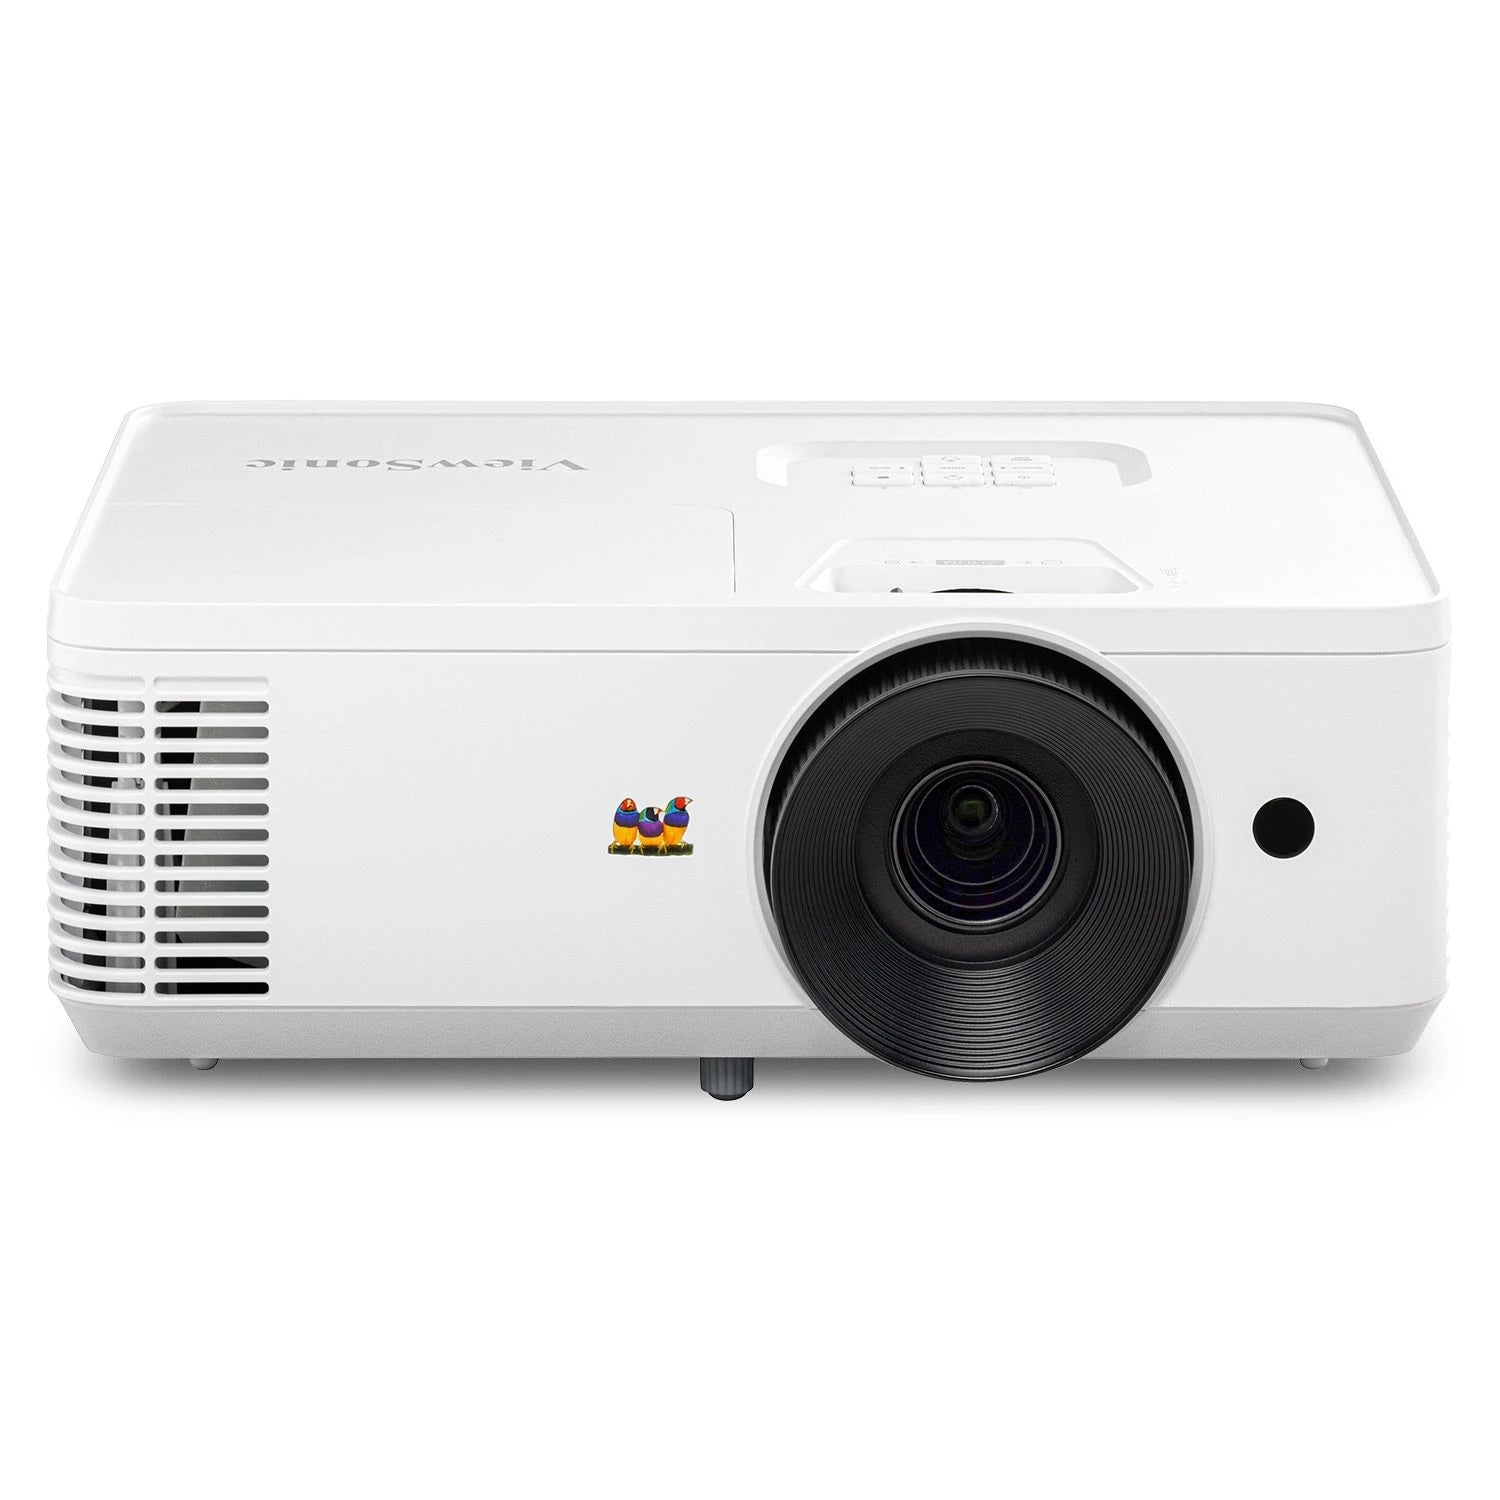 Videoproyector Viewsonic Dlp Pa503Hd Full Hd (1920X1080) /4000 Lumens / Hdmi X 2/ Usb-A/ Rs-232 / 15,000 Horas/Tiro Normal /Bocina Interna